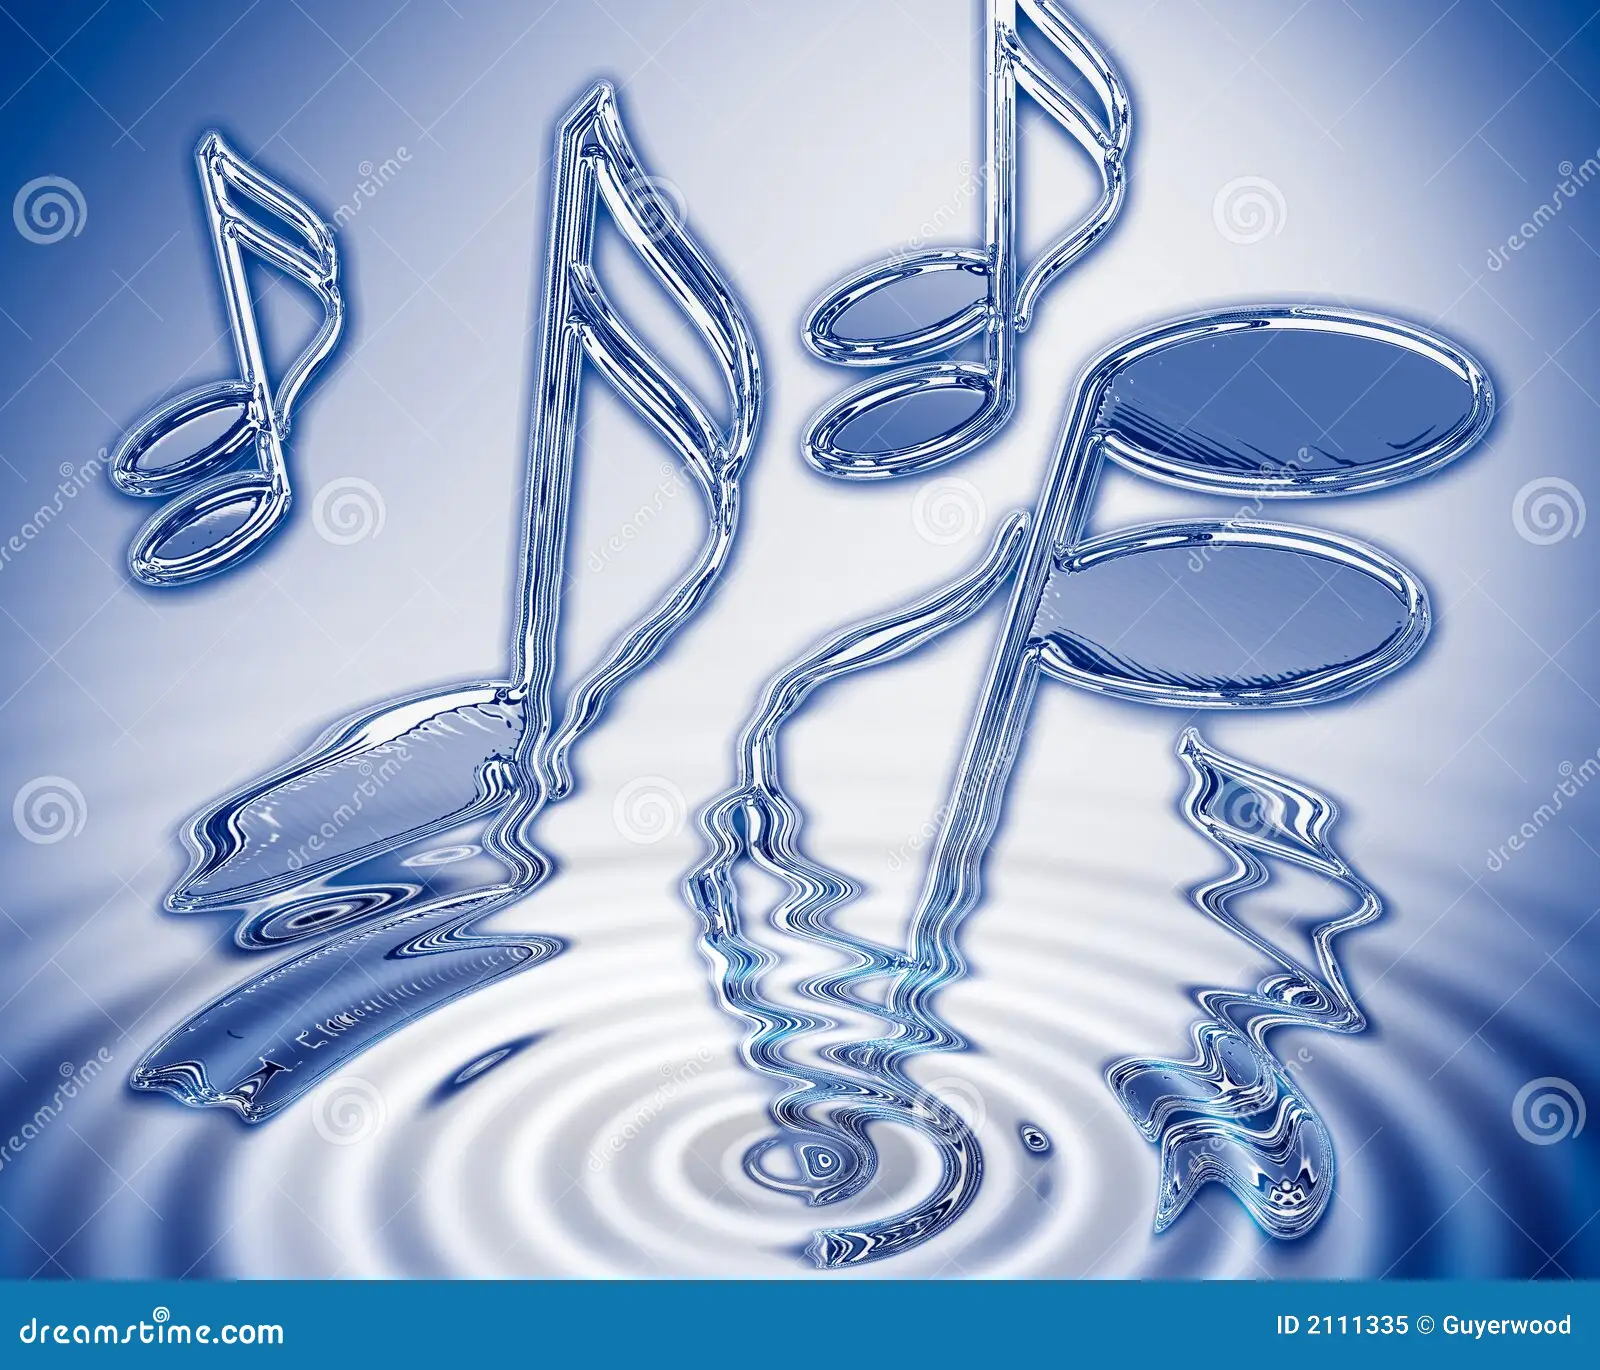 water music